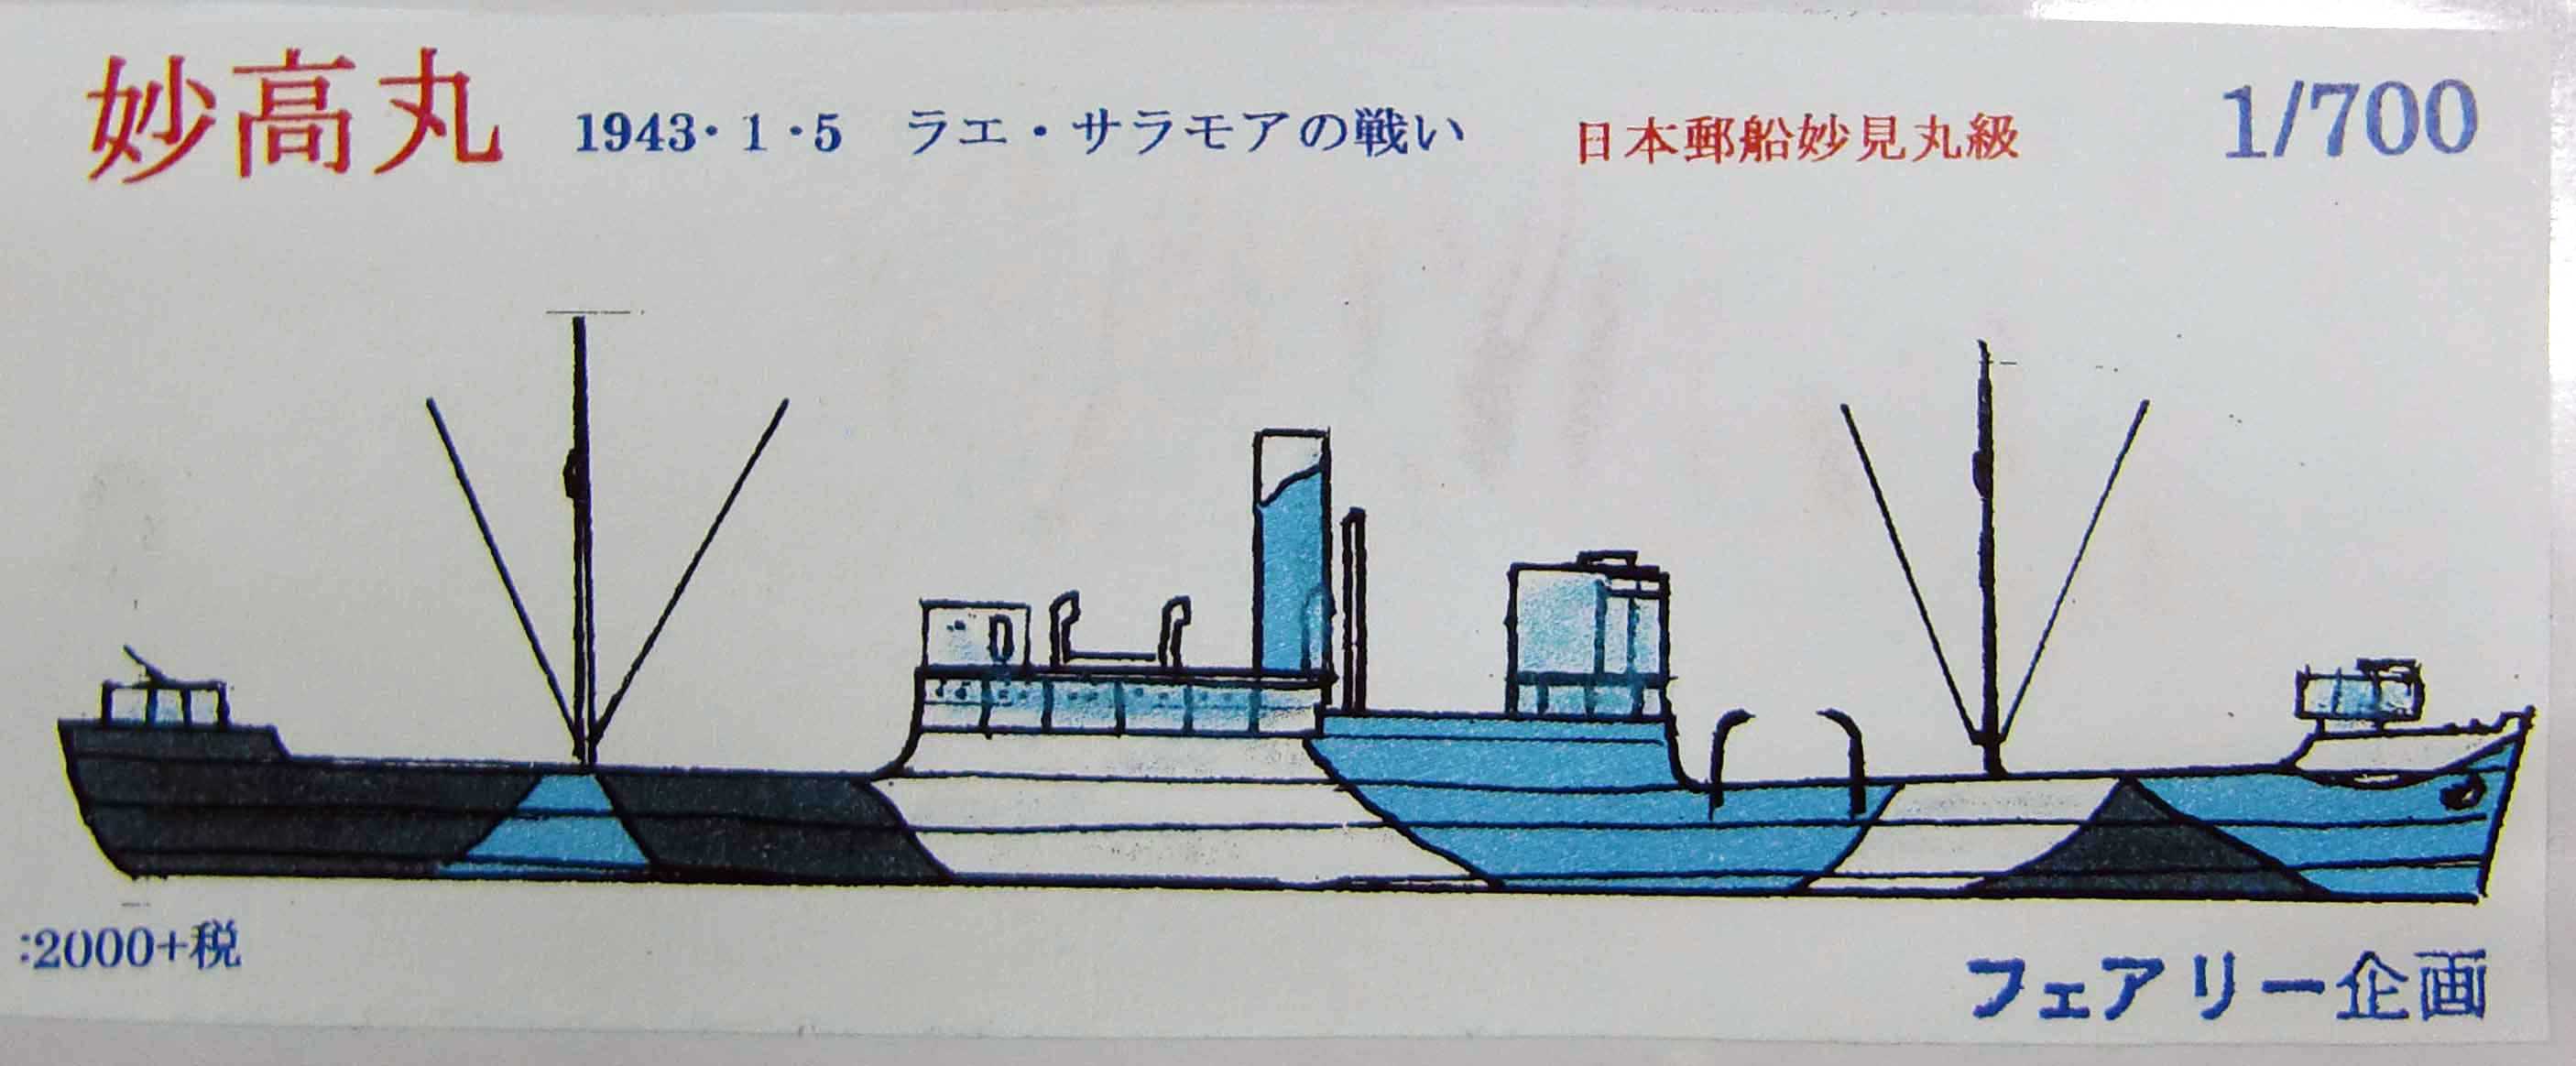 フェアリー企画1/700 日本郵船妙見丸級 妙高丸入荷しました。